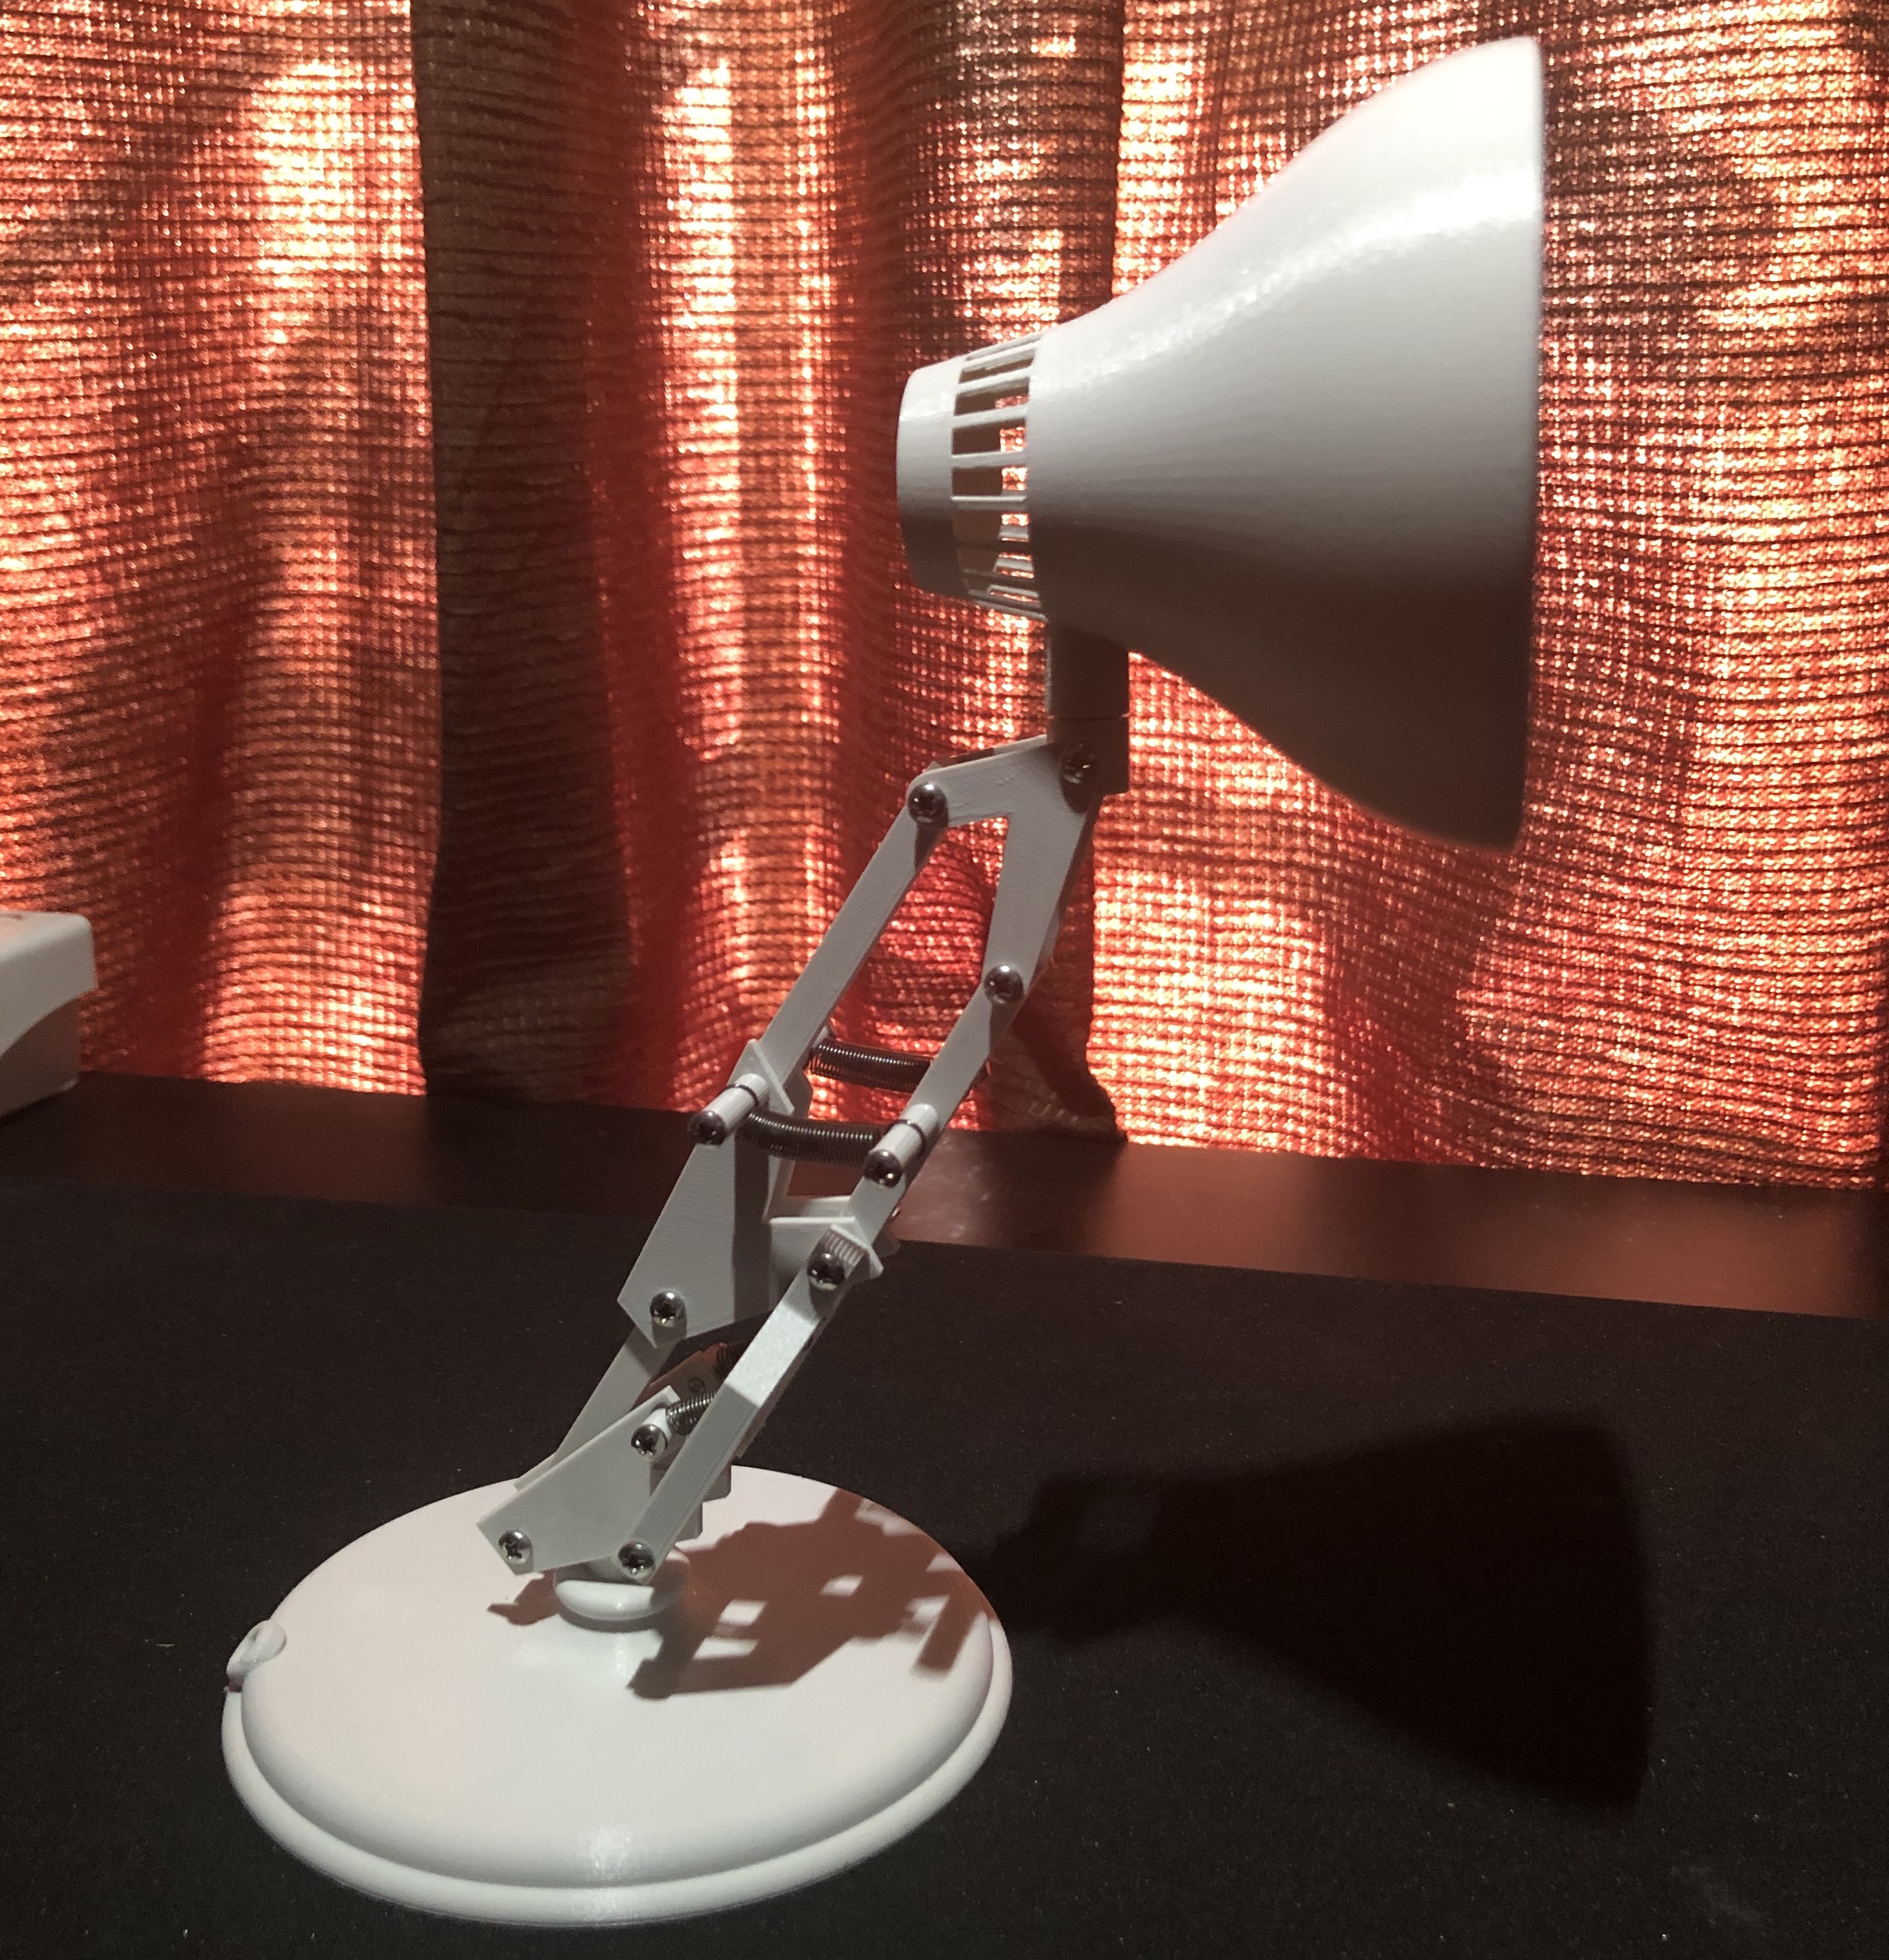 Pixar's Luxo Jr. Lamp (1986 Original Version)